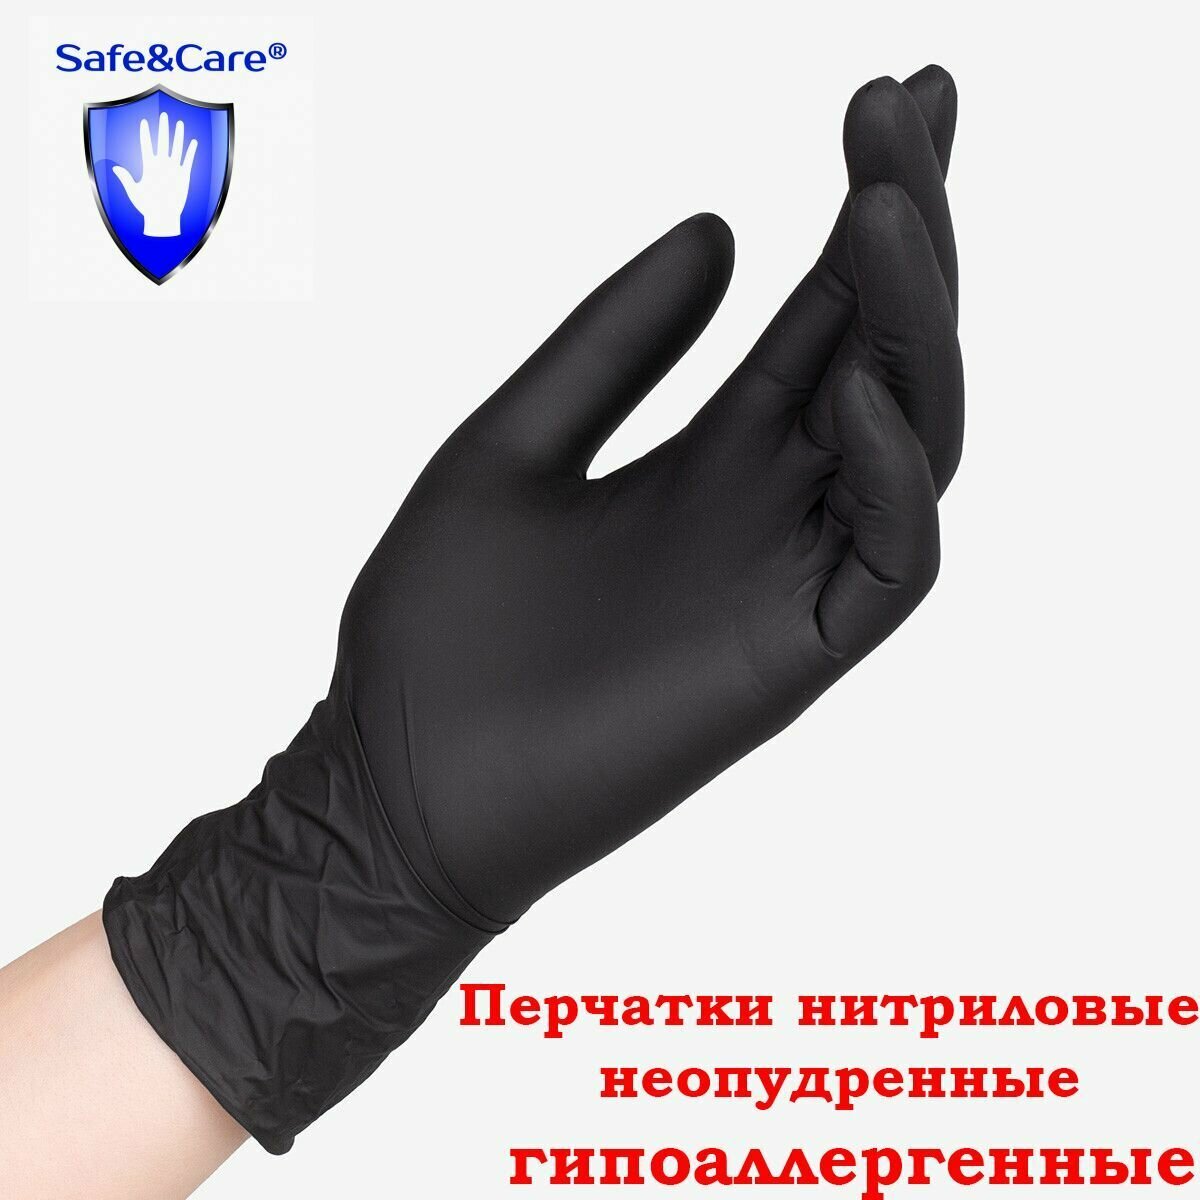 Перчатки Safe&Care нитриловые черные ZN 318 10 штук размер M